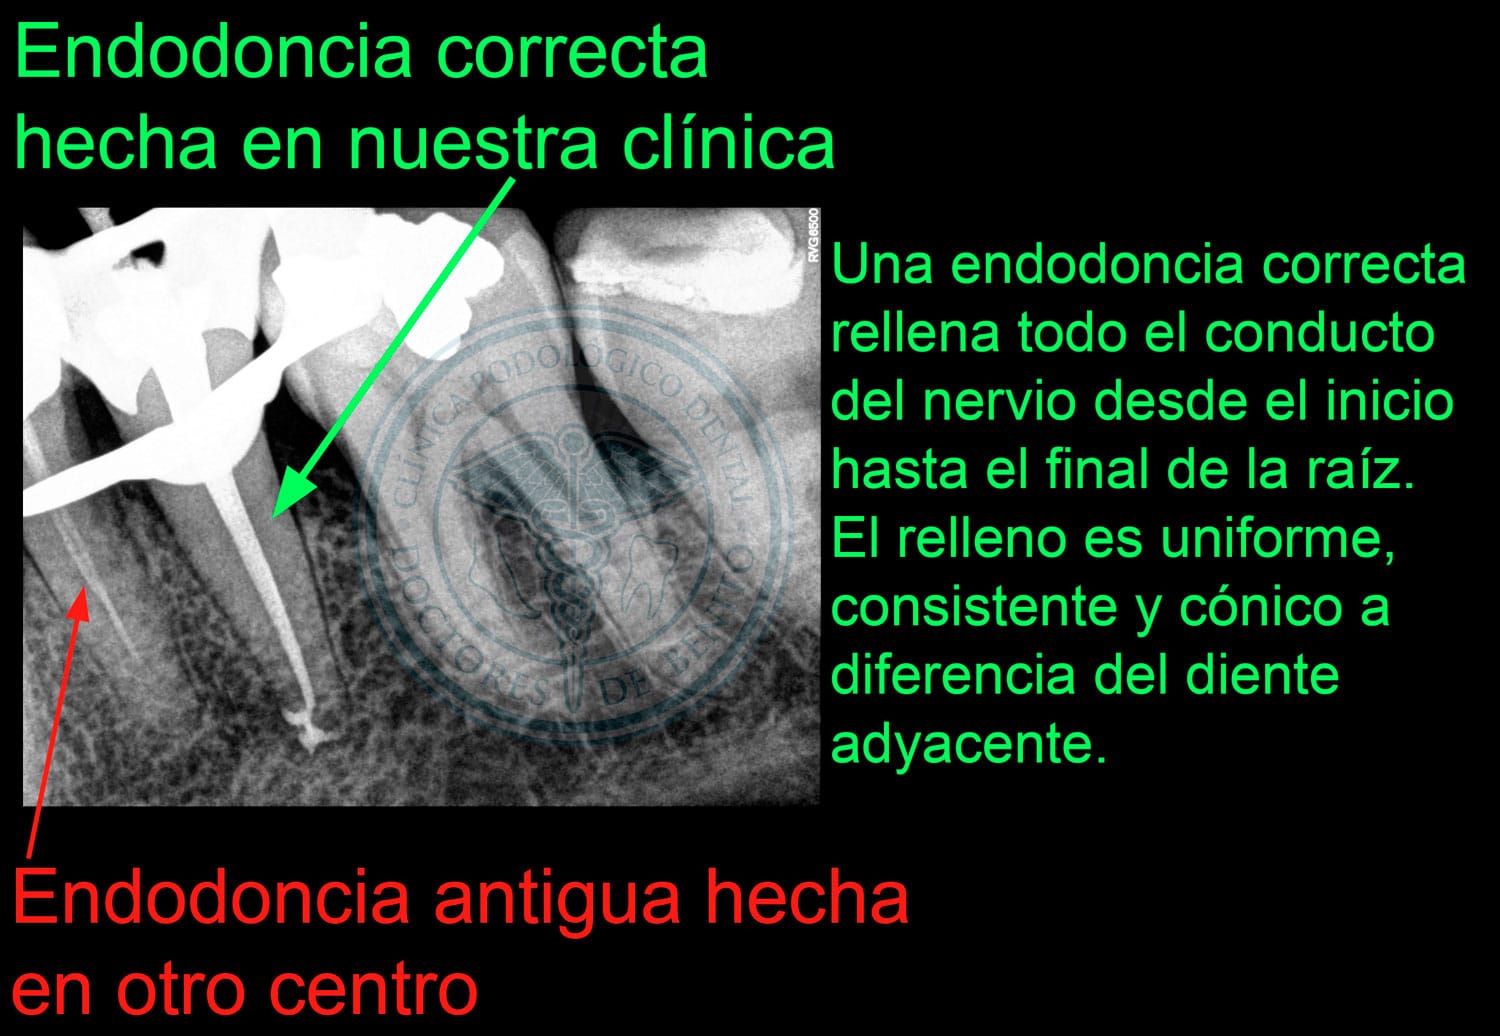 Endodoncia incorrecta vs correcta